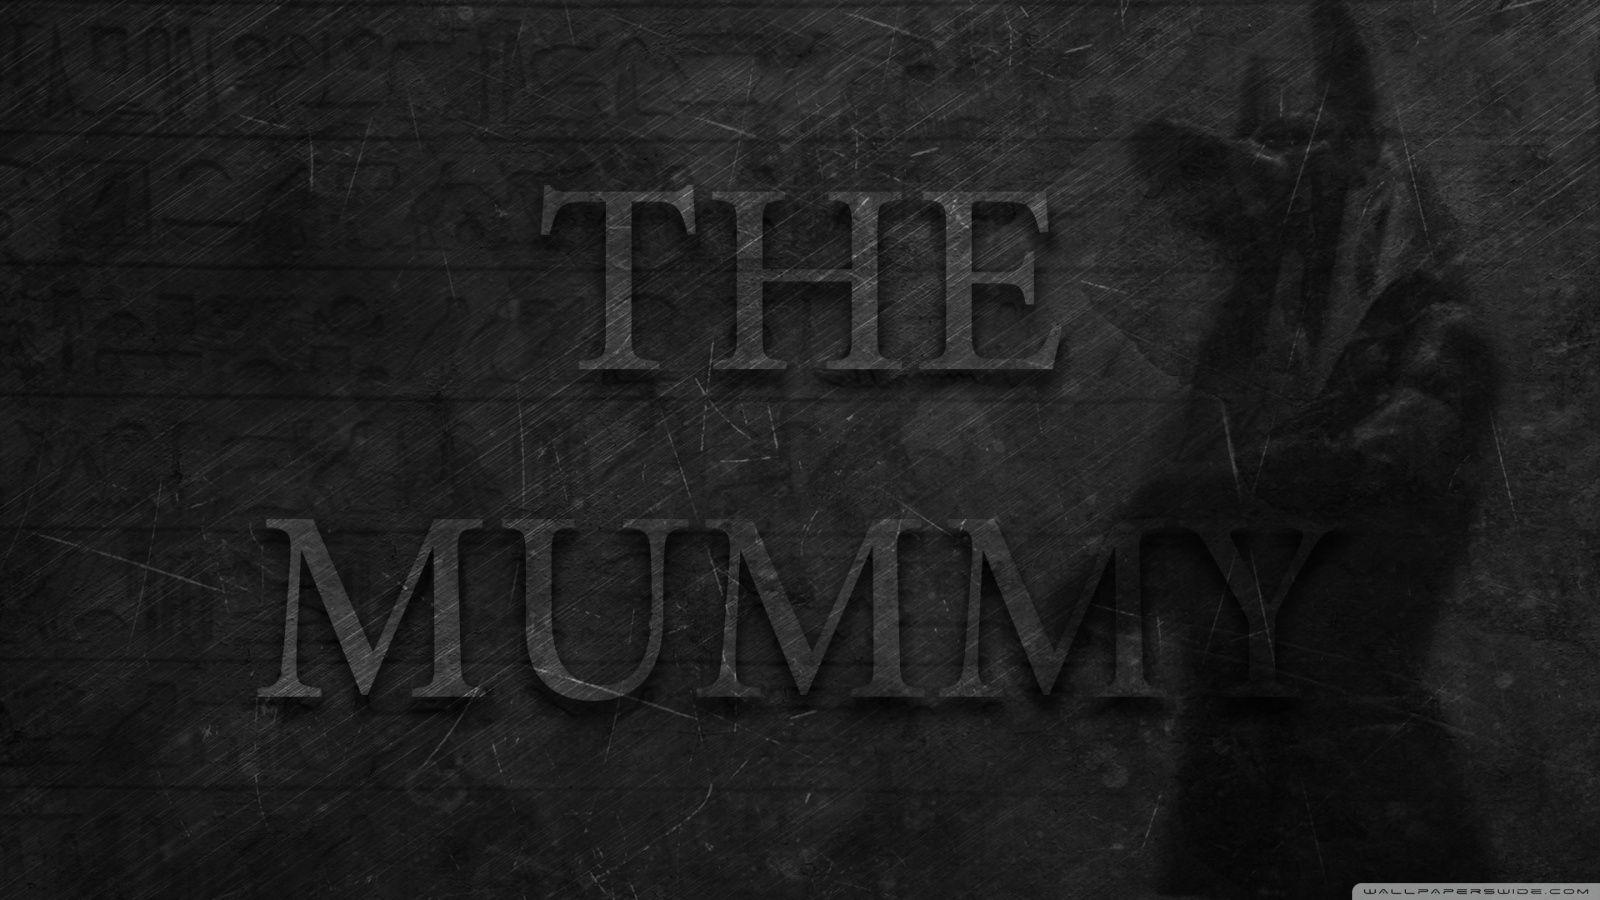 The Mummy 2017 ❤ 4K HD Desktop Wallpaper for 4K Ultra HD TV • Wide